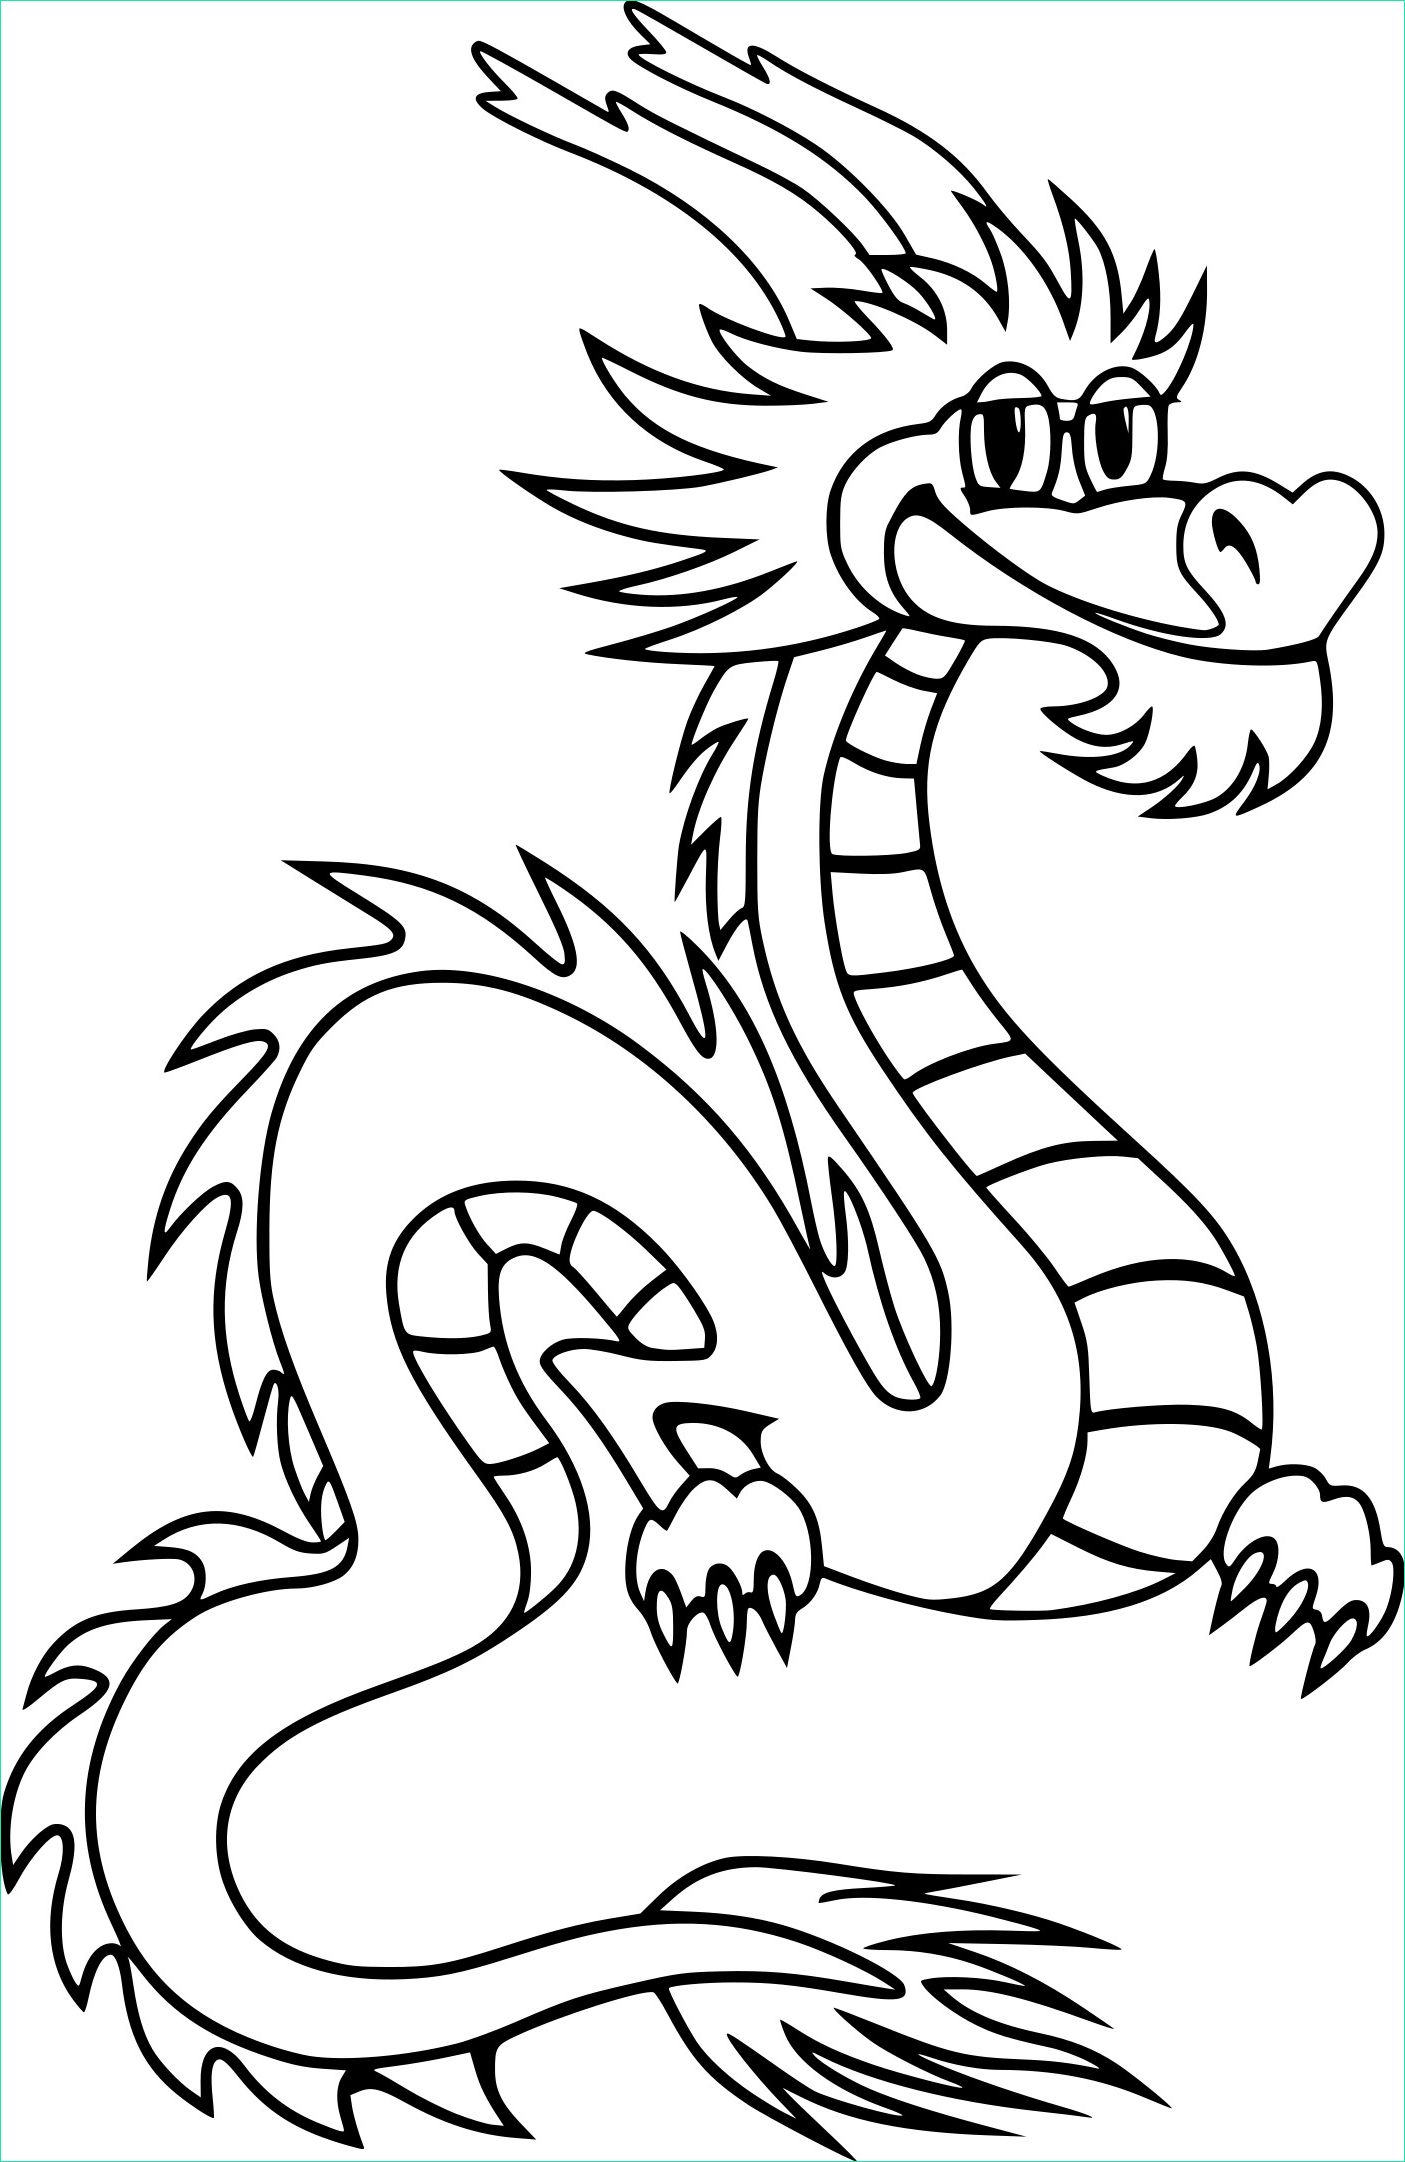 Dessin Dragons Impressionnant Collection Coloriage Dragon Chinois Marrant à Imprimer Sur Coloriages